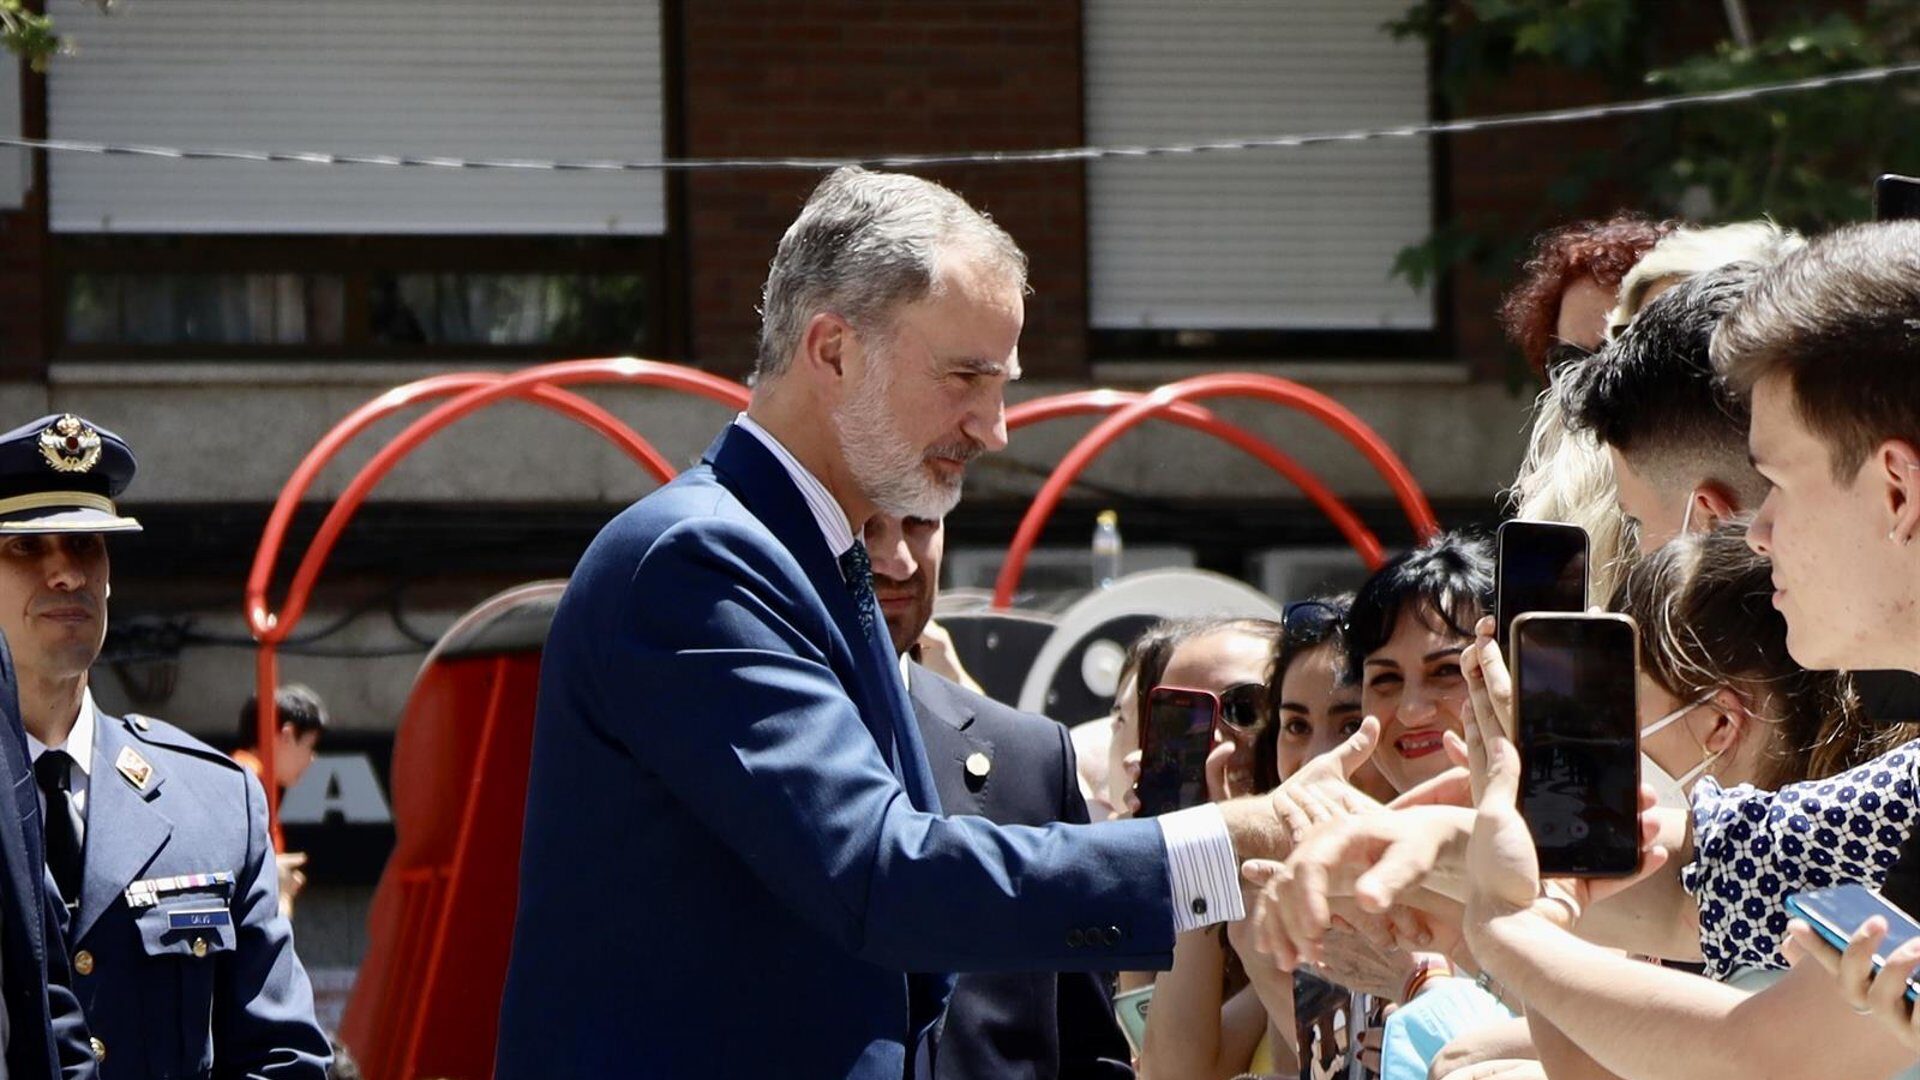 Aclaman al Rey Felipe VI en Puertollano entre gritos de "guapo" y vivas a España